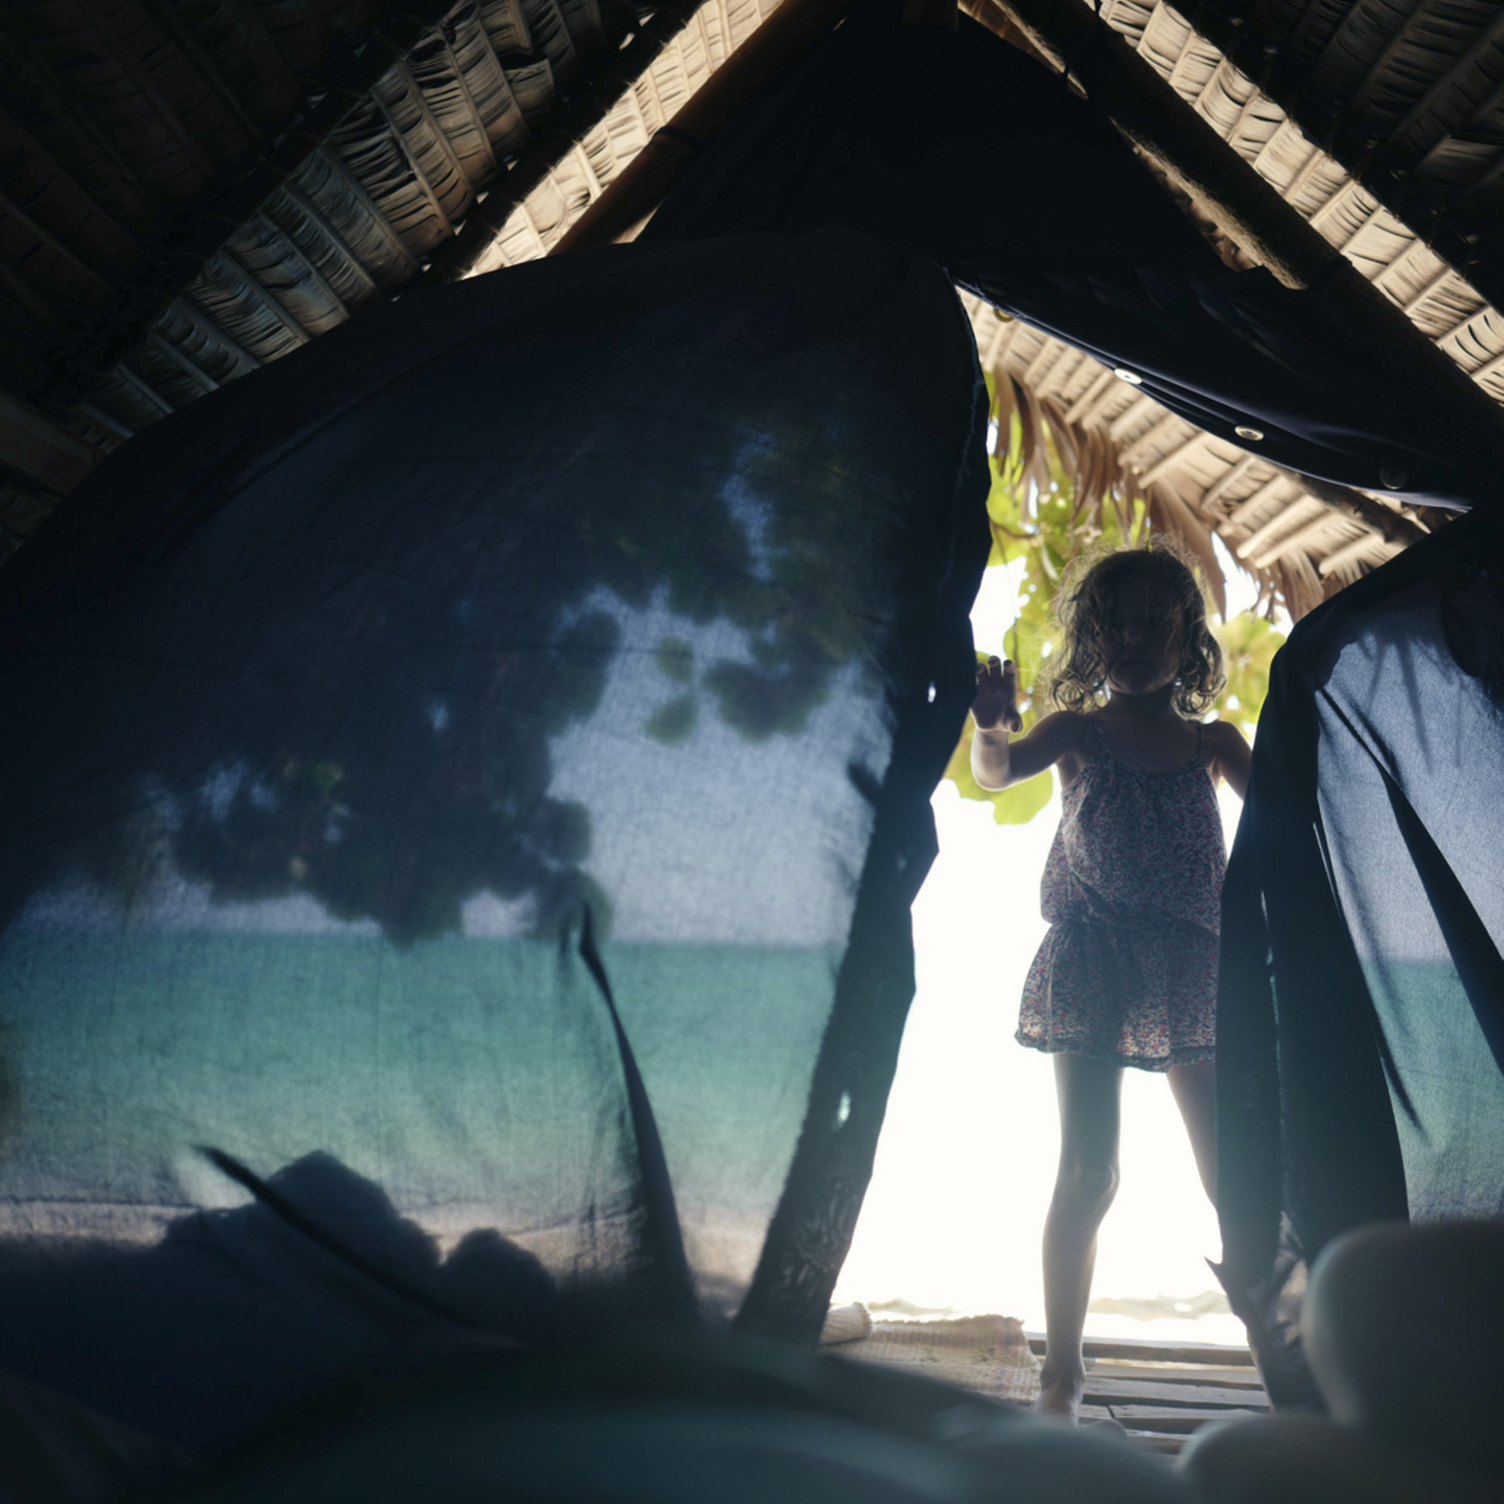 Una ragazza entra in una tenda sulla spiaggia